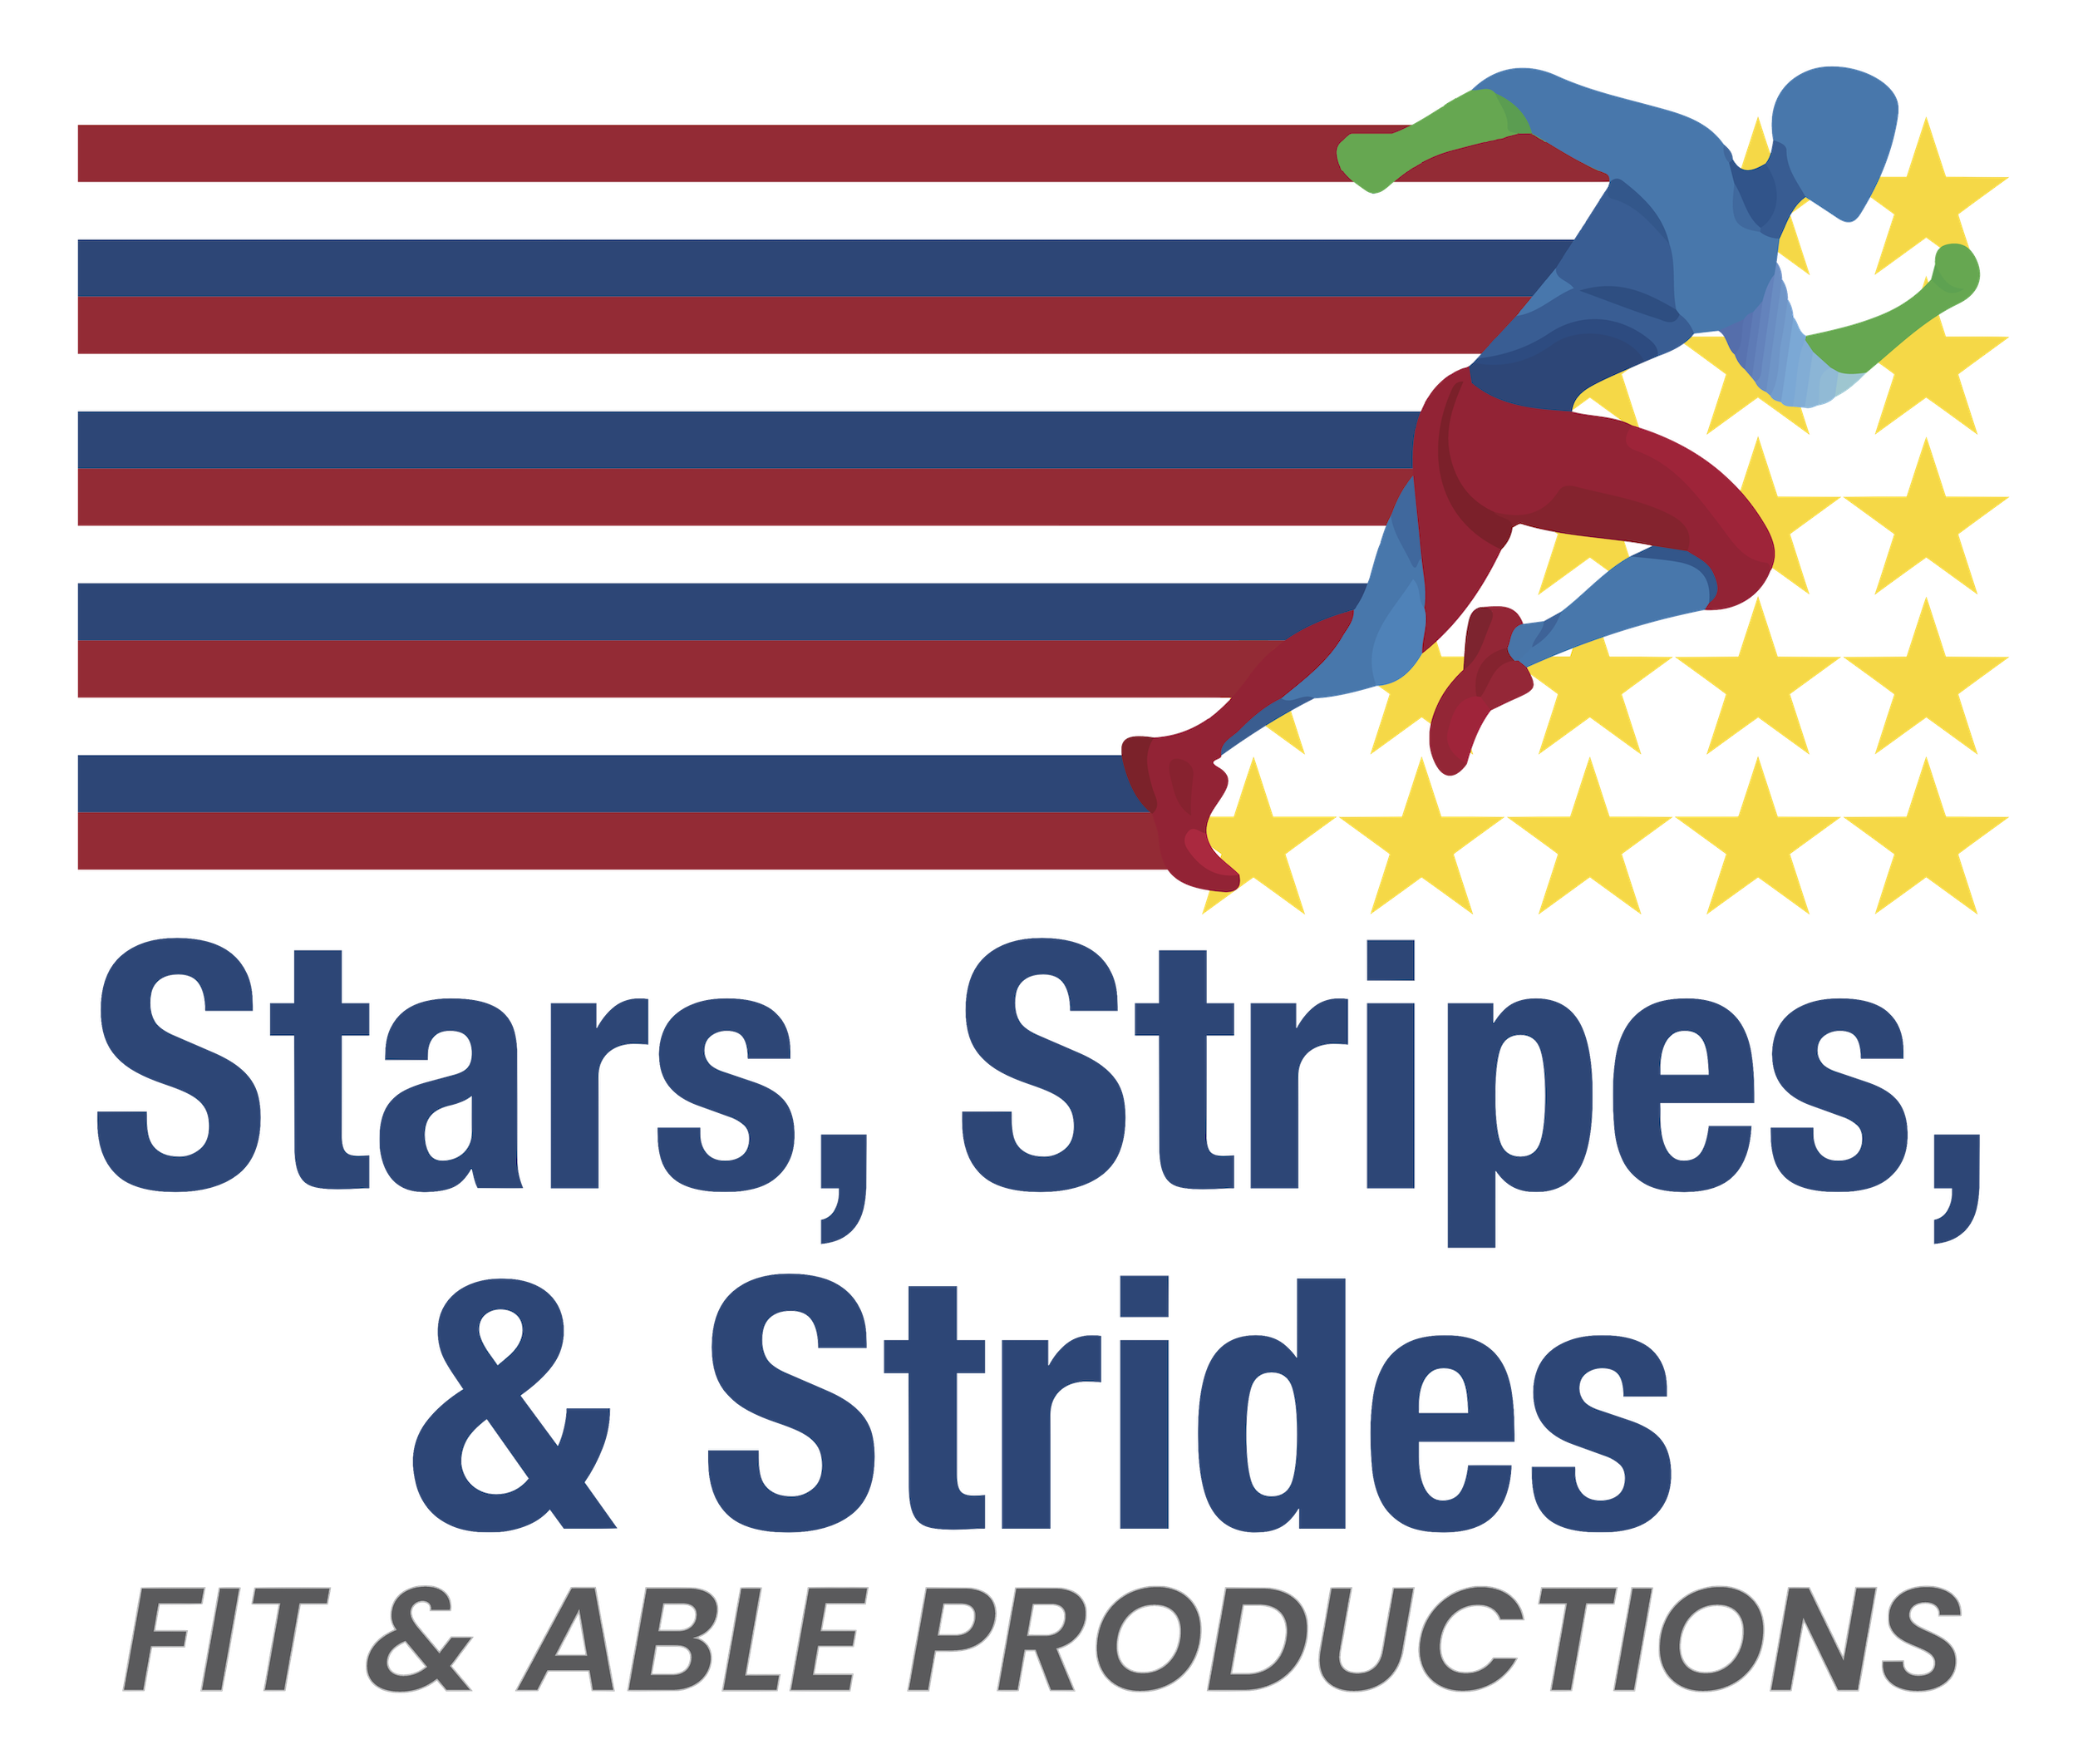 Stars, Stripes, & Strides